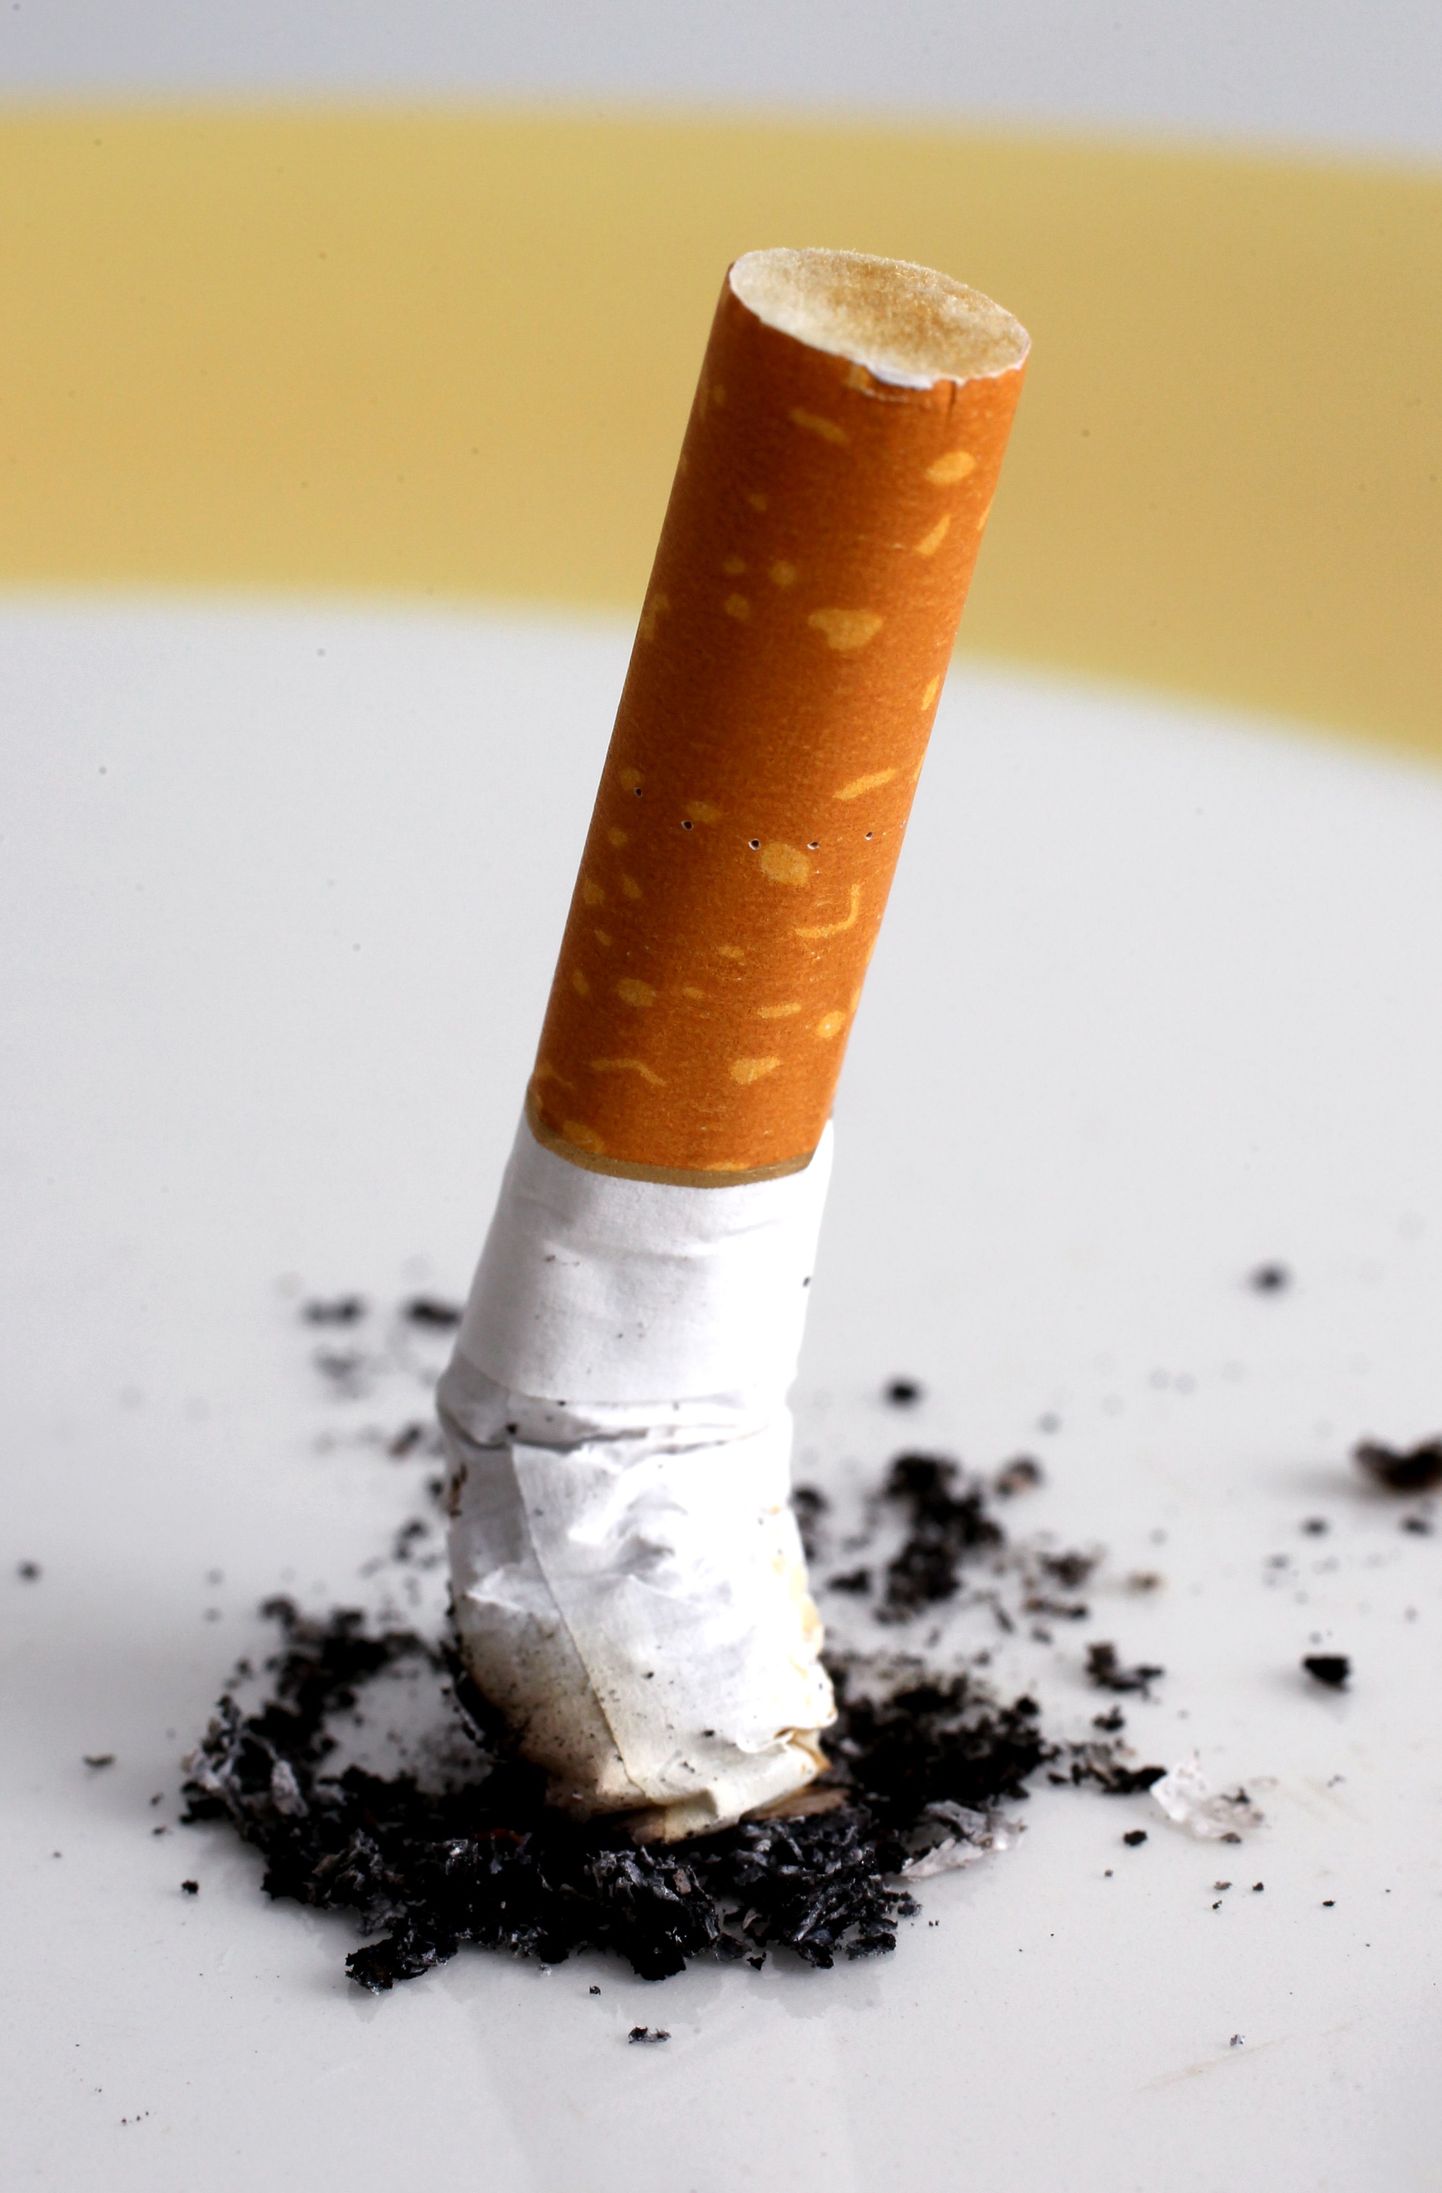 TLNPM1: KONI:TALLINN, EESTI, 03APR13
Tubakas; suitsetamine; koni.
th/FOTO TOOMAS HUIK/ POSTIMEES